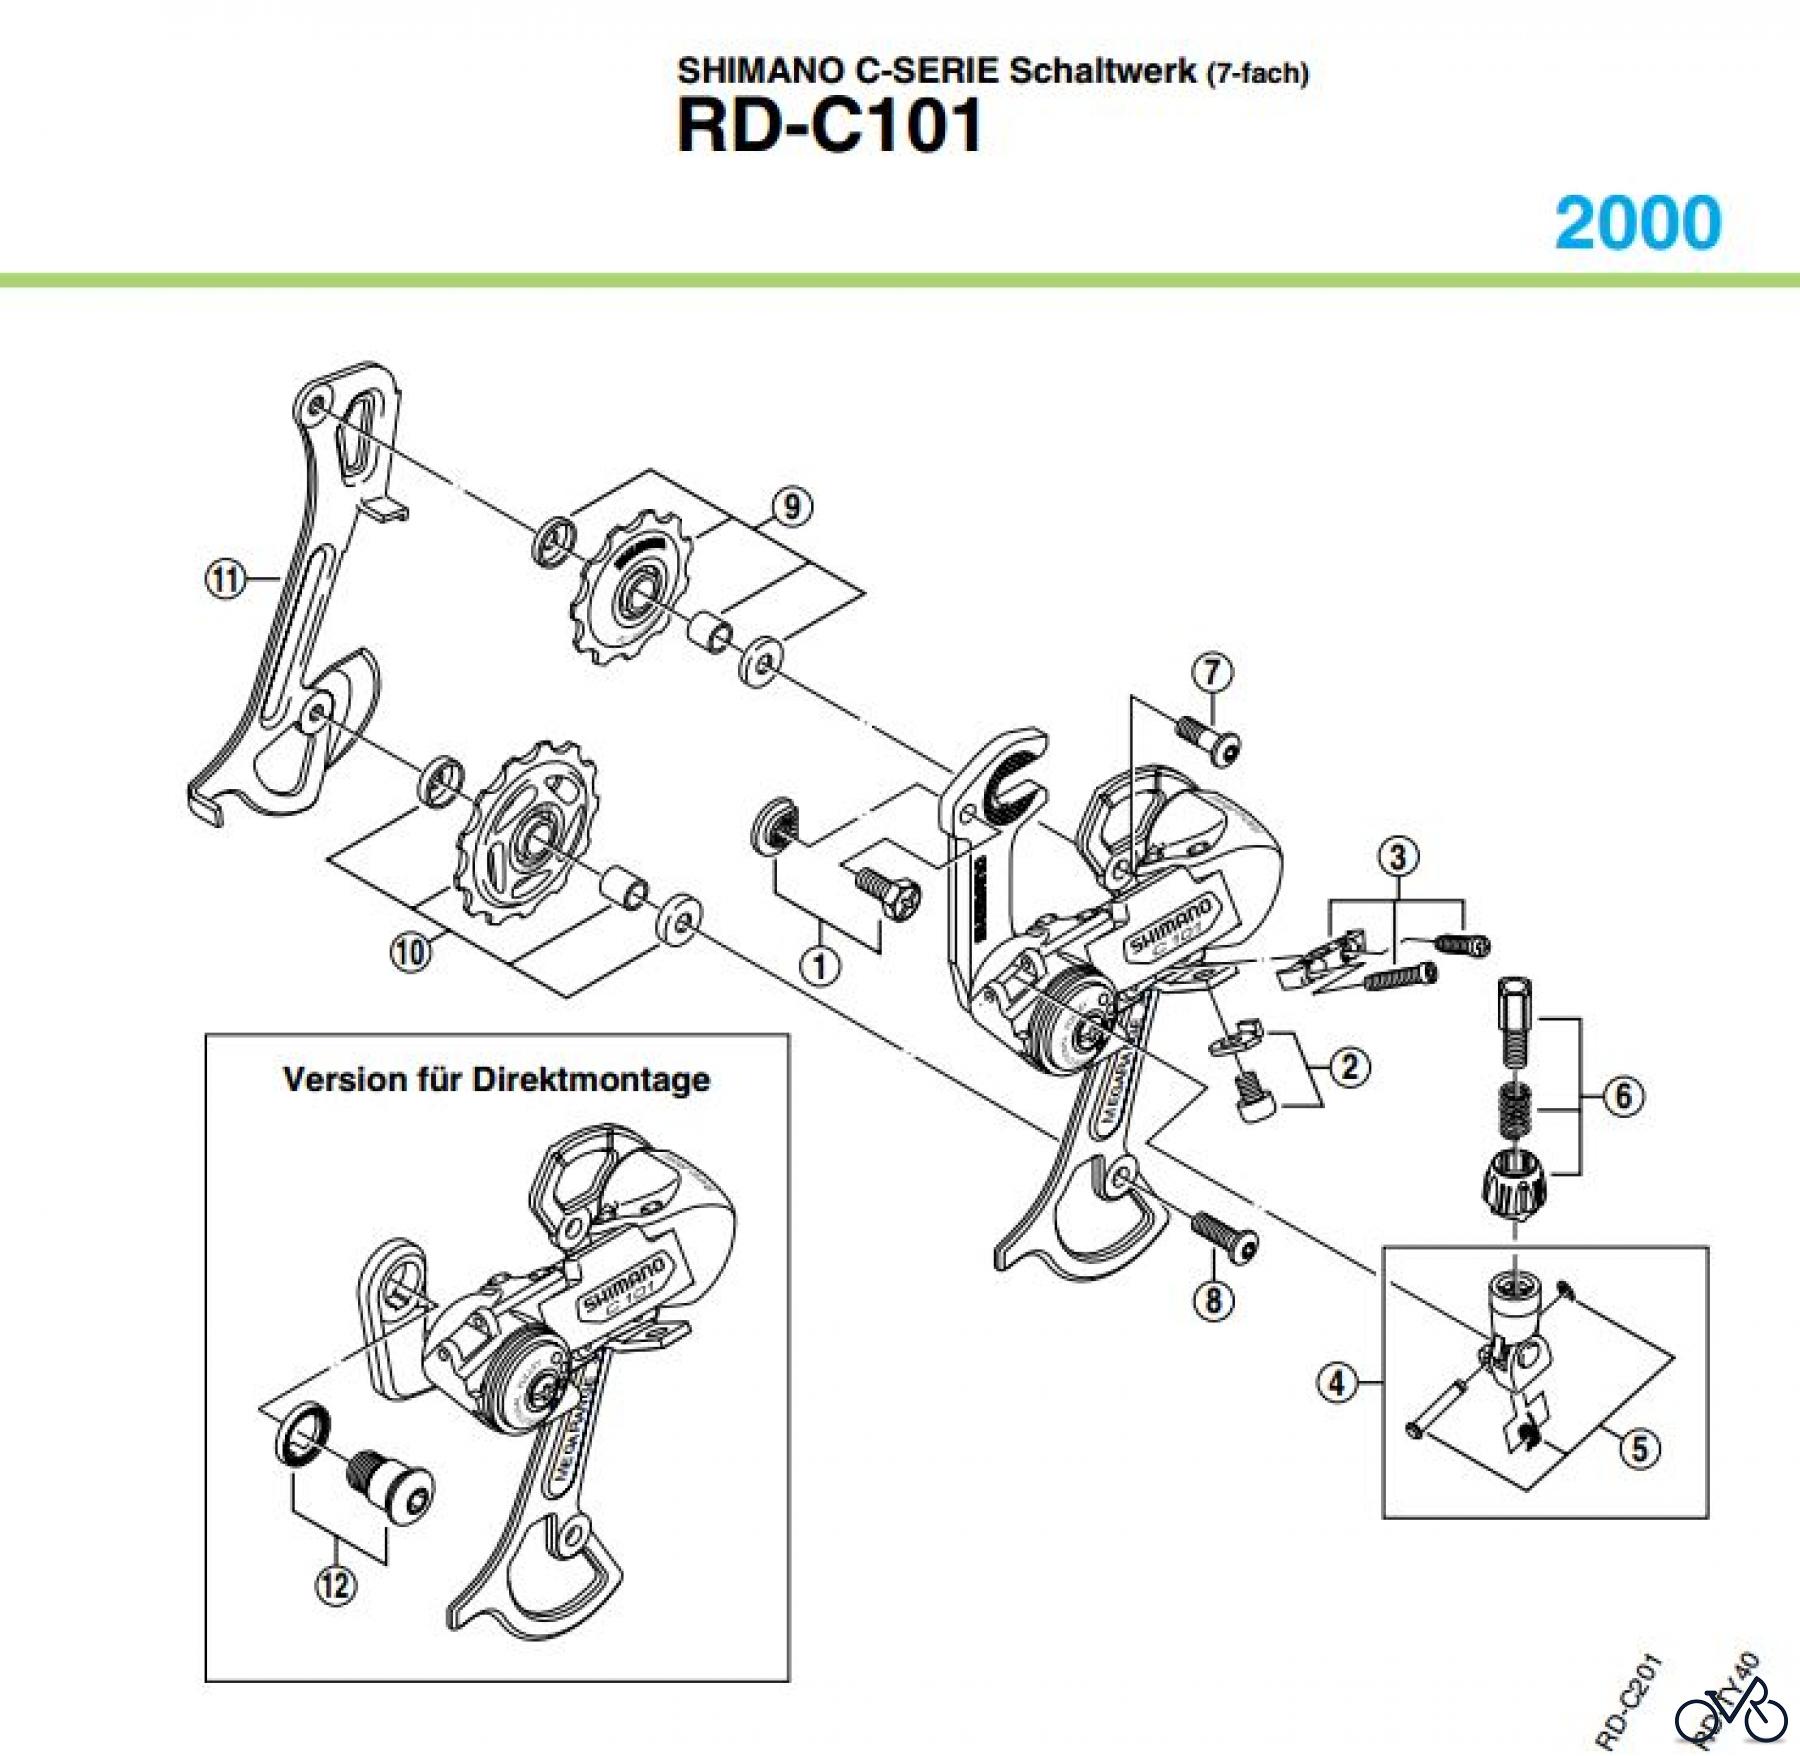  Shimano RD Rear Derailleur - Schaltwerk RD-C101-00